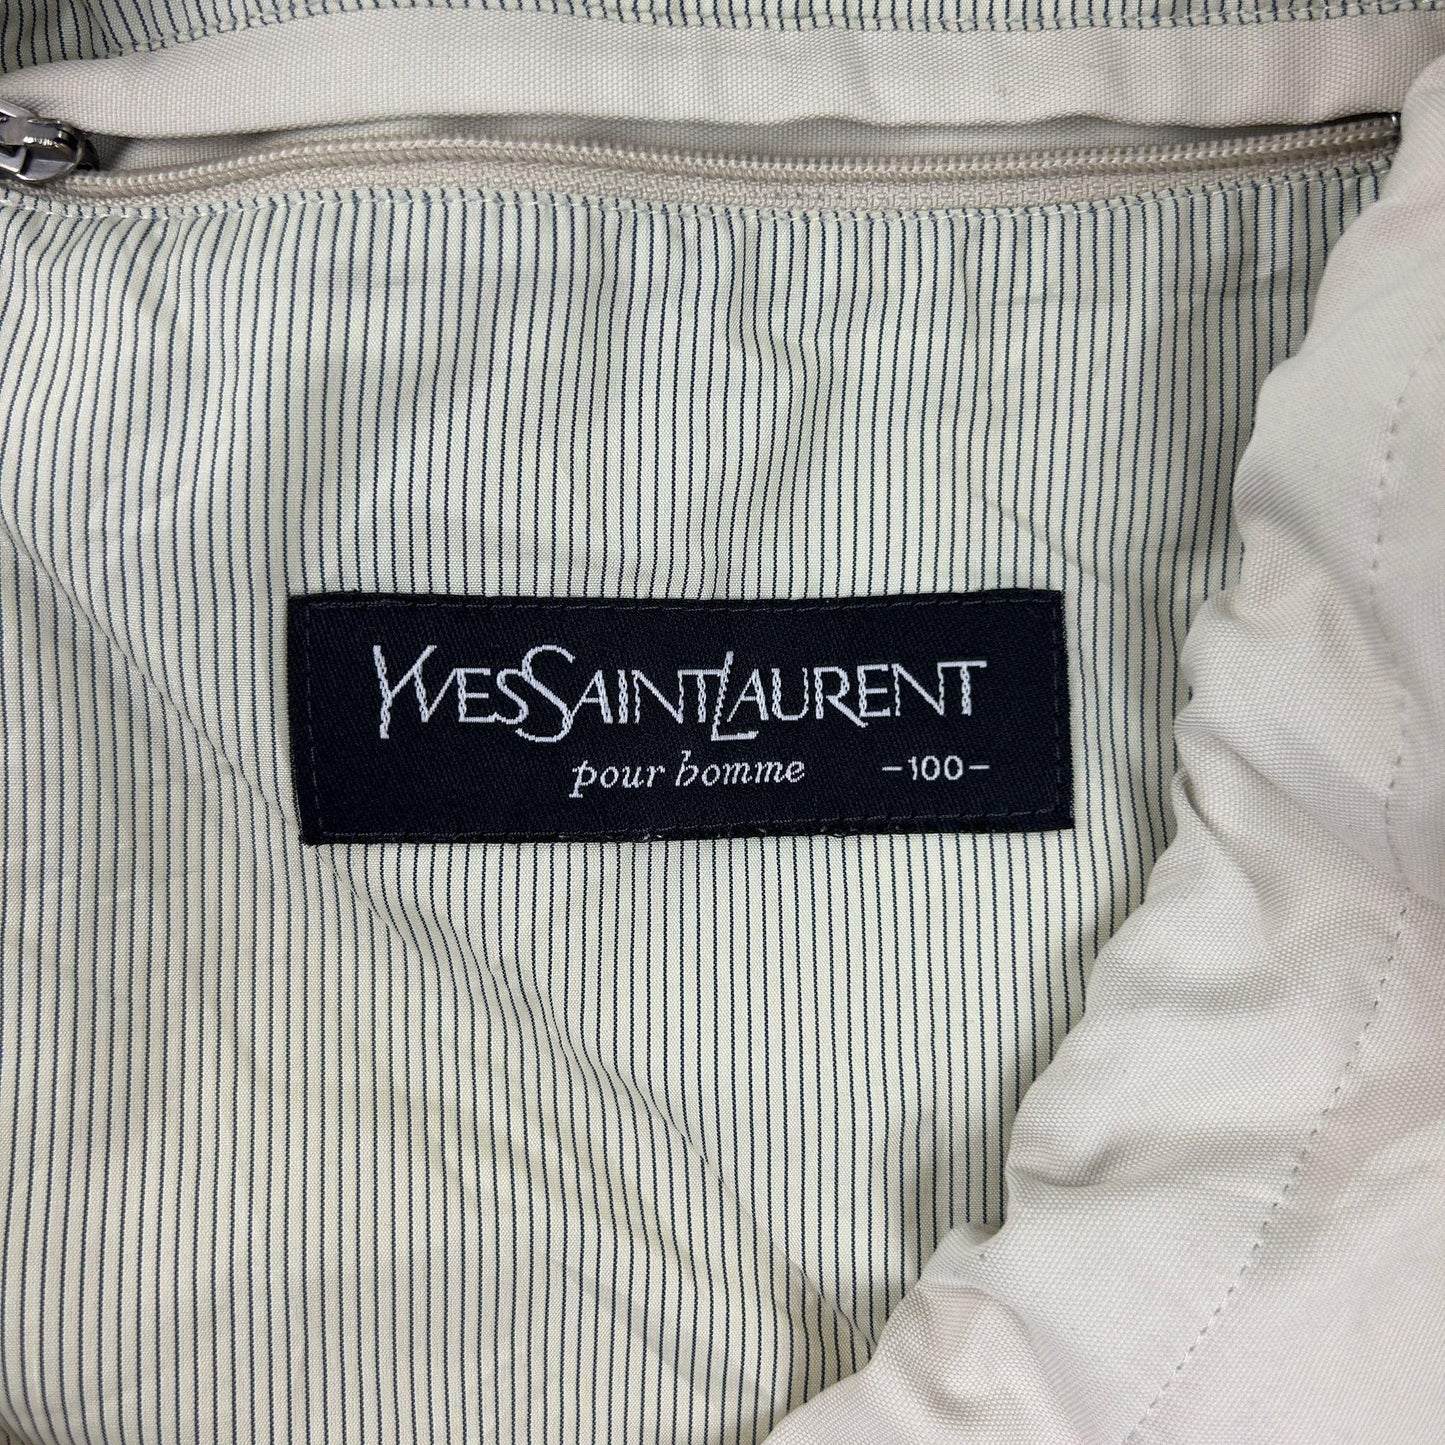 Vintage Yves Saint Laurent Jacket Size L - Known Source